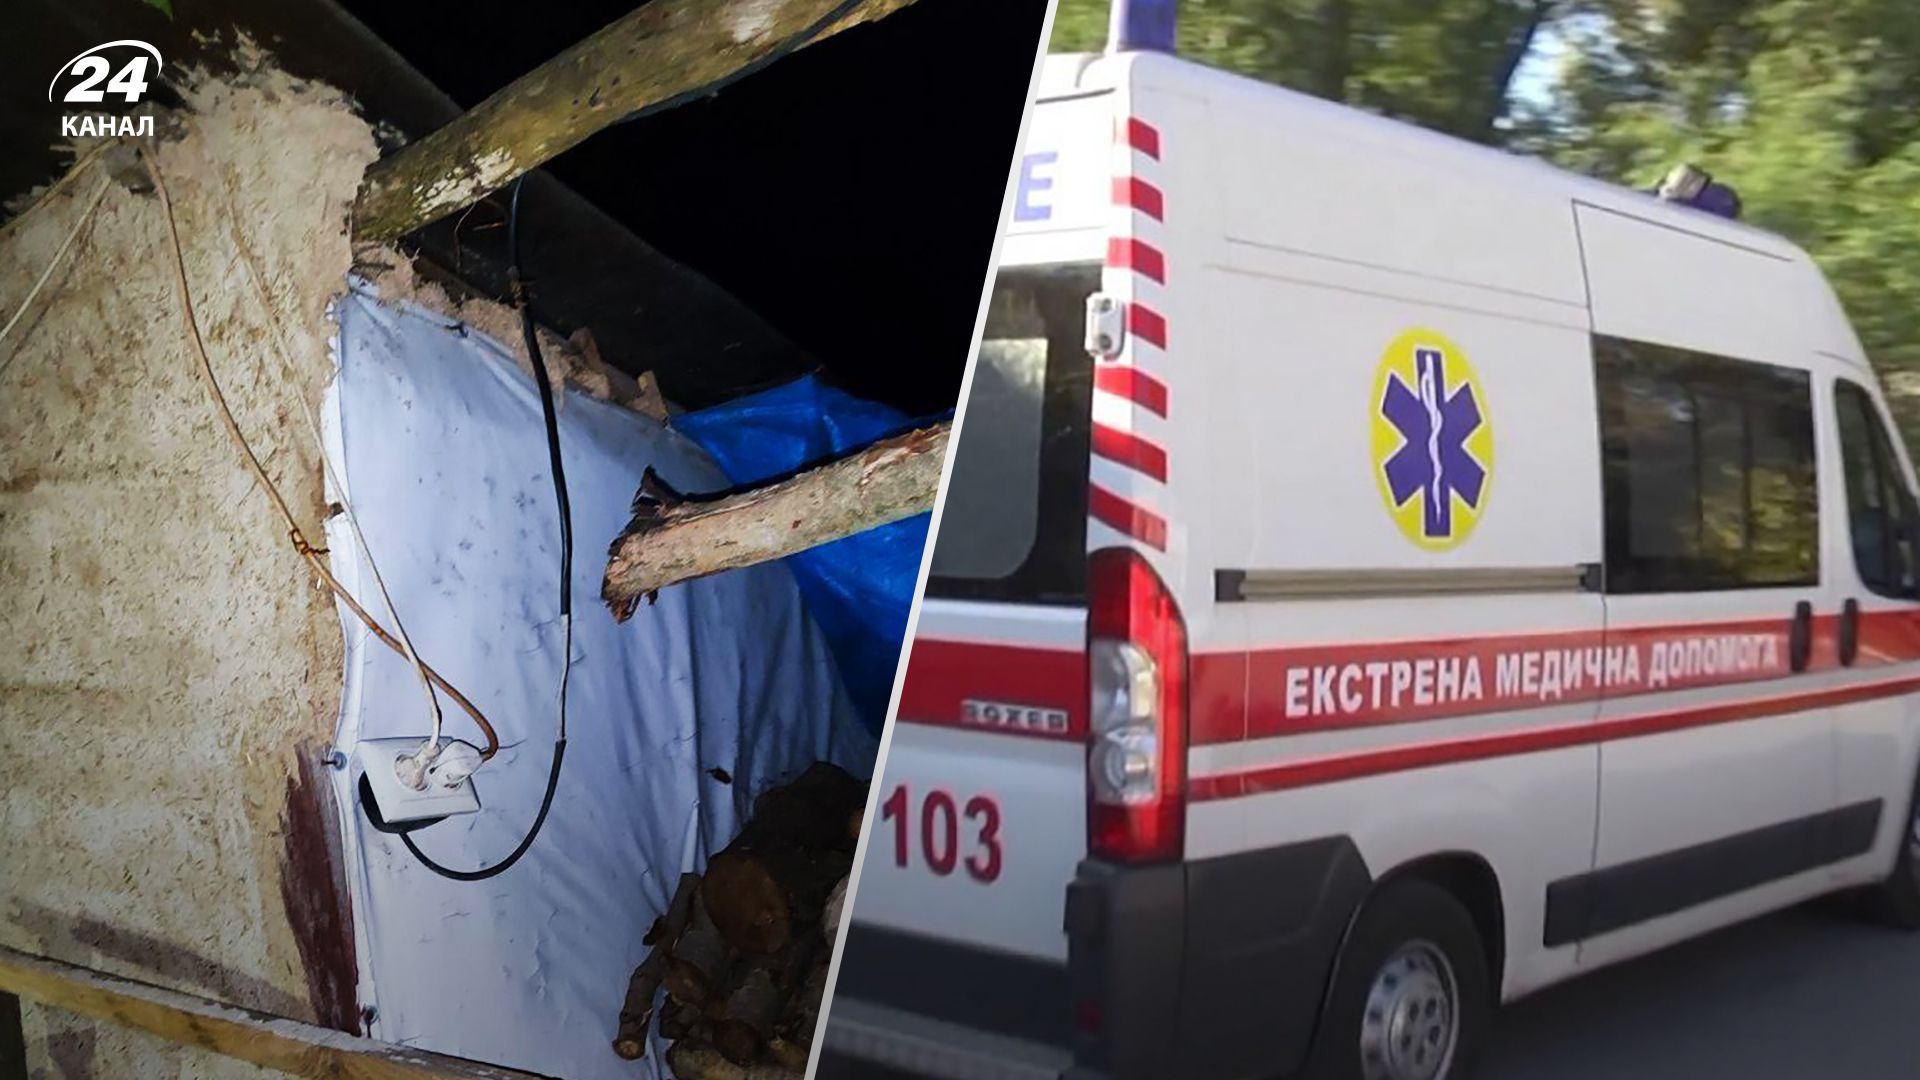 8-летнего мальчика в Белоцерковщине Киевской области поразило током - детали